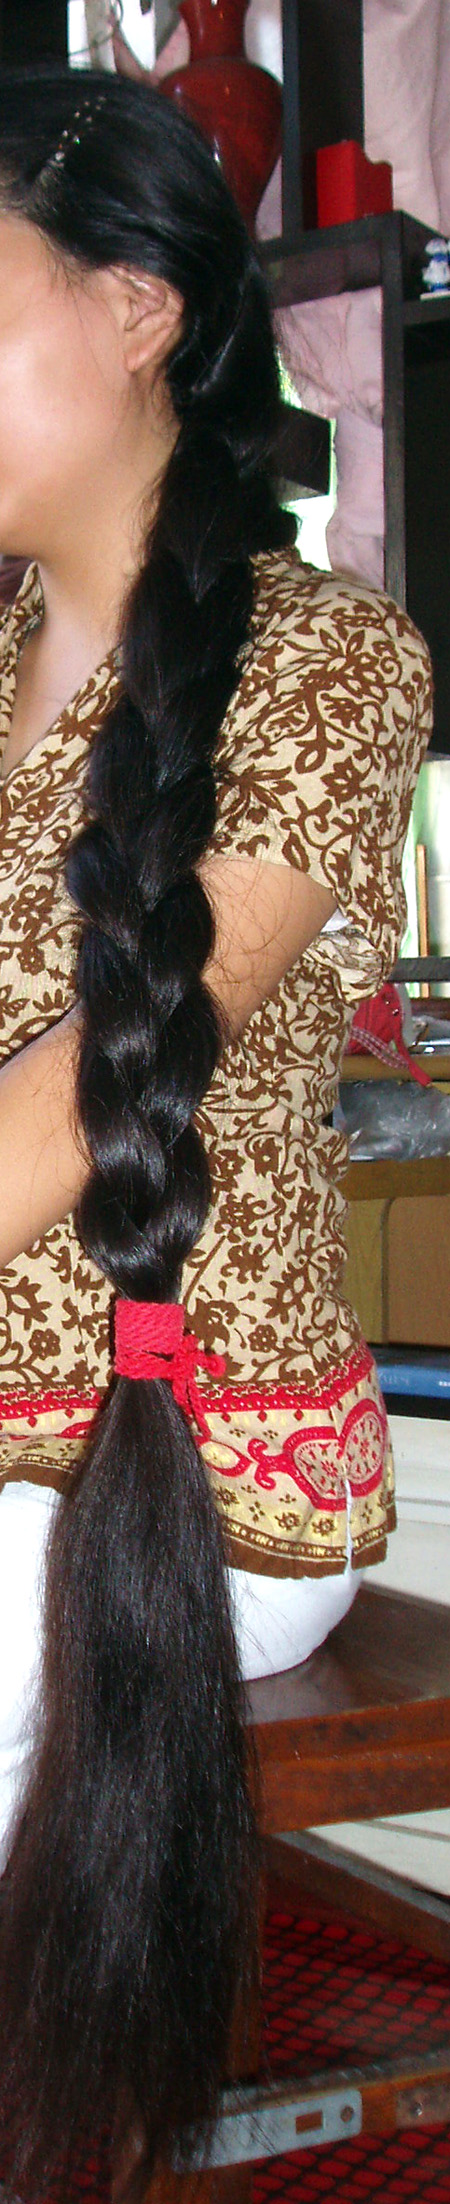 浓密粗厚的长发被编成了一条黑亮的大粗辫子